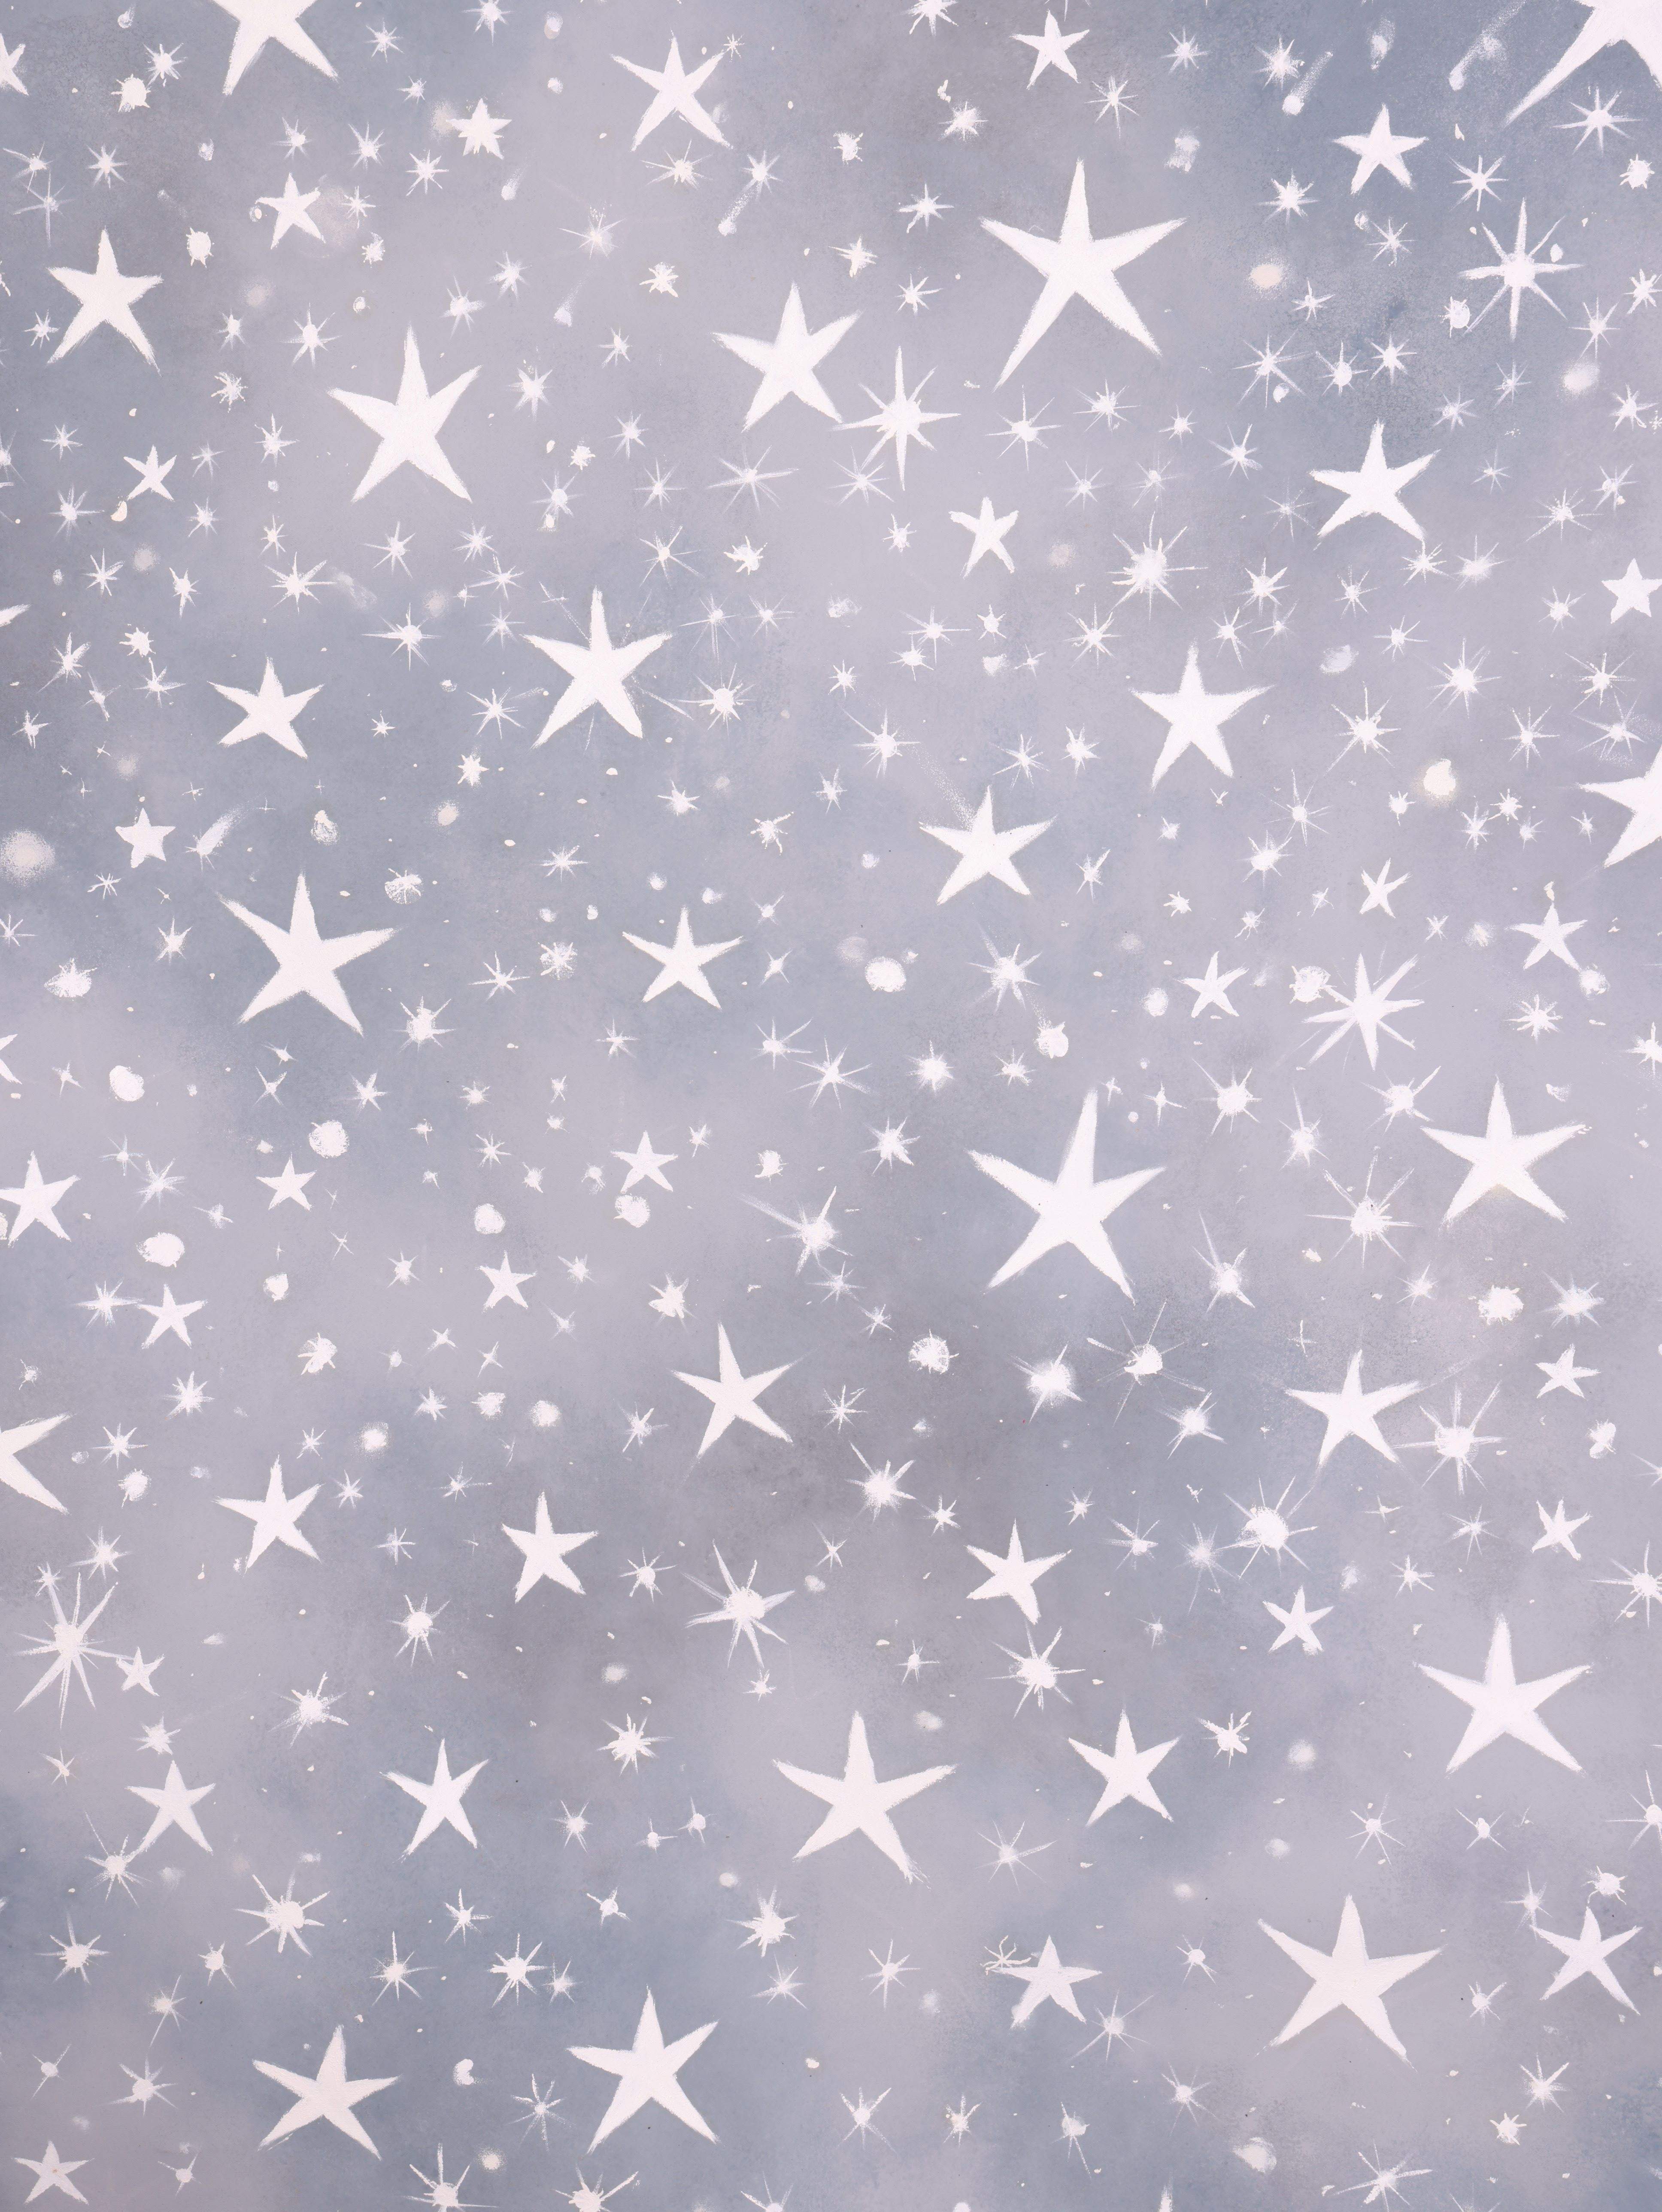 Celestial Stars